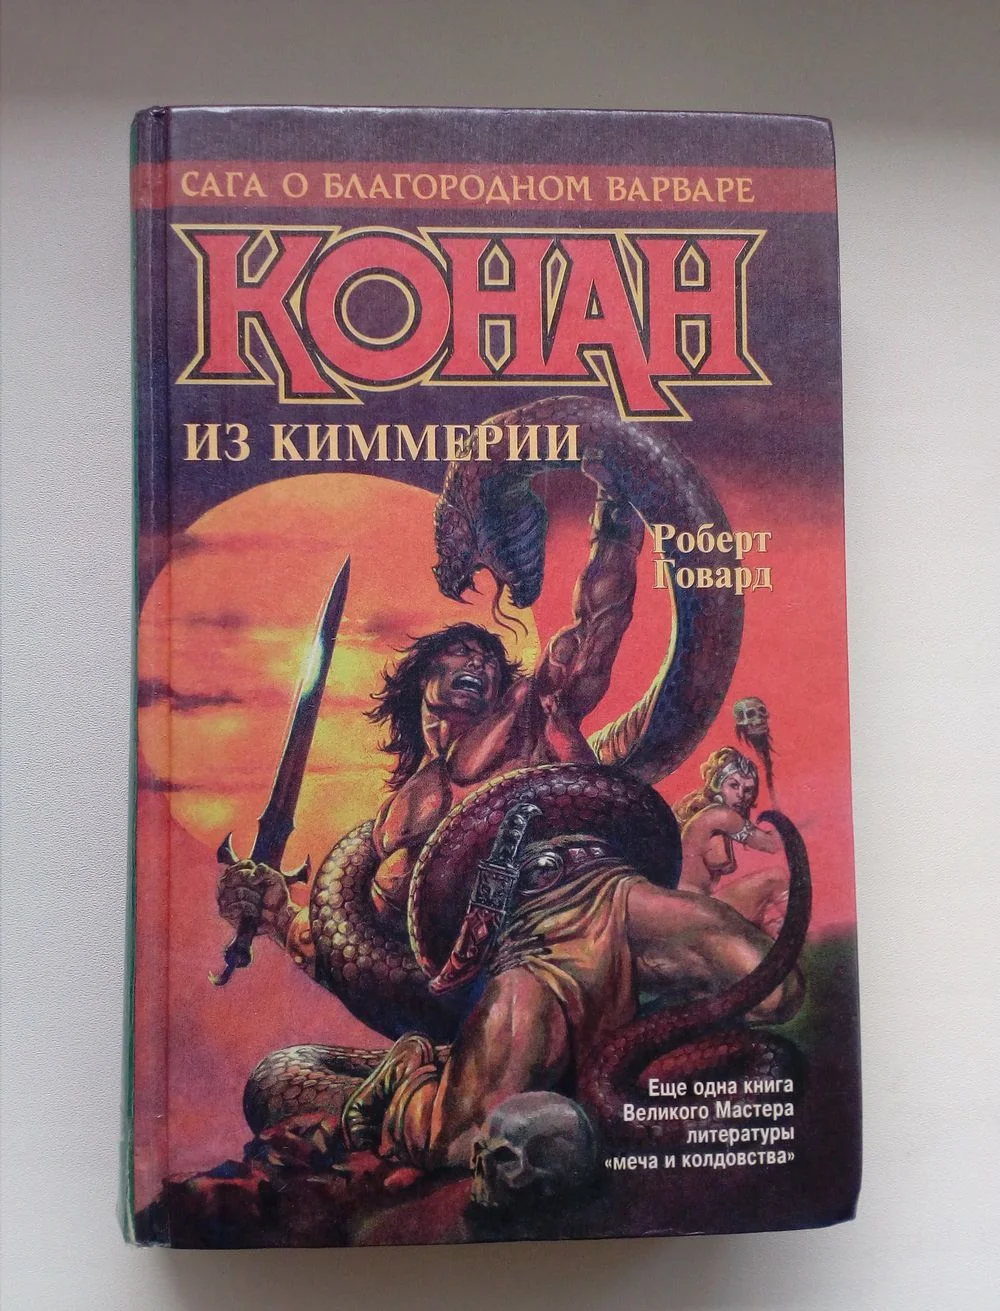 5 отличных фэнтези-романов о Конане-варваре и киммерийцах - фото 2